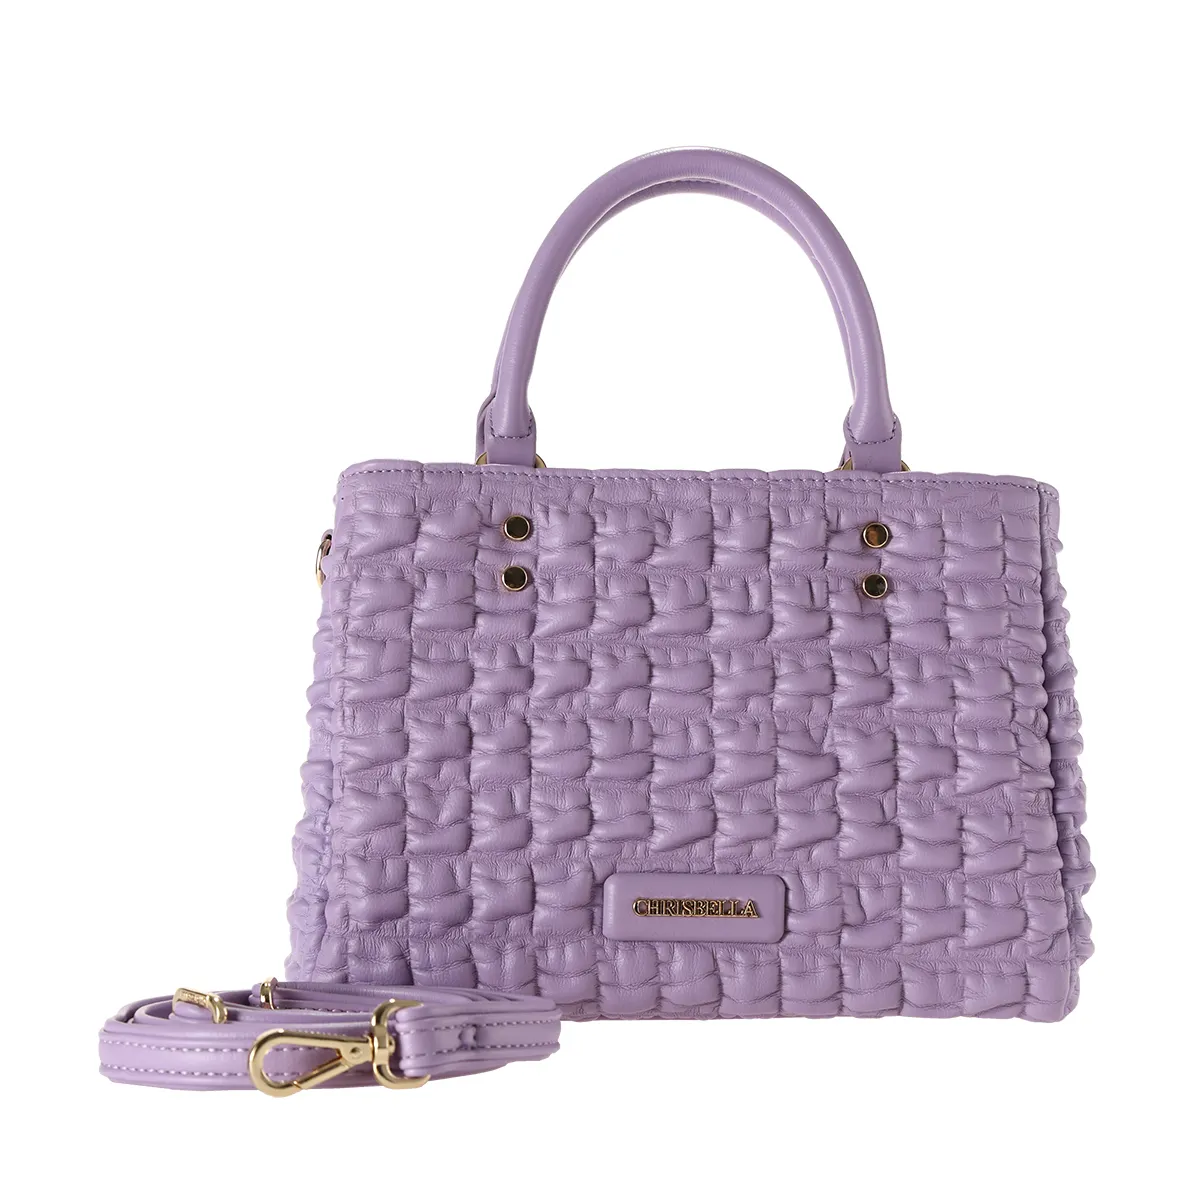 ODM OEM Aopiya bags Purple comfortable PU leather wholesale for women bags handbags ladies